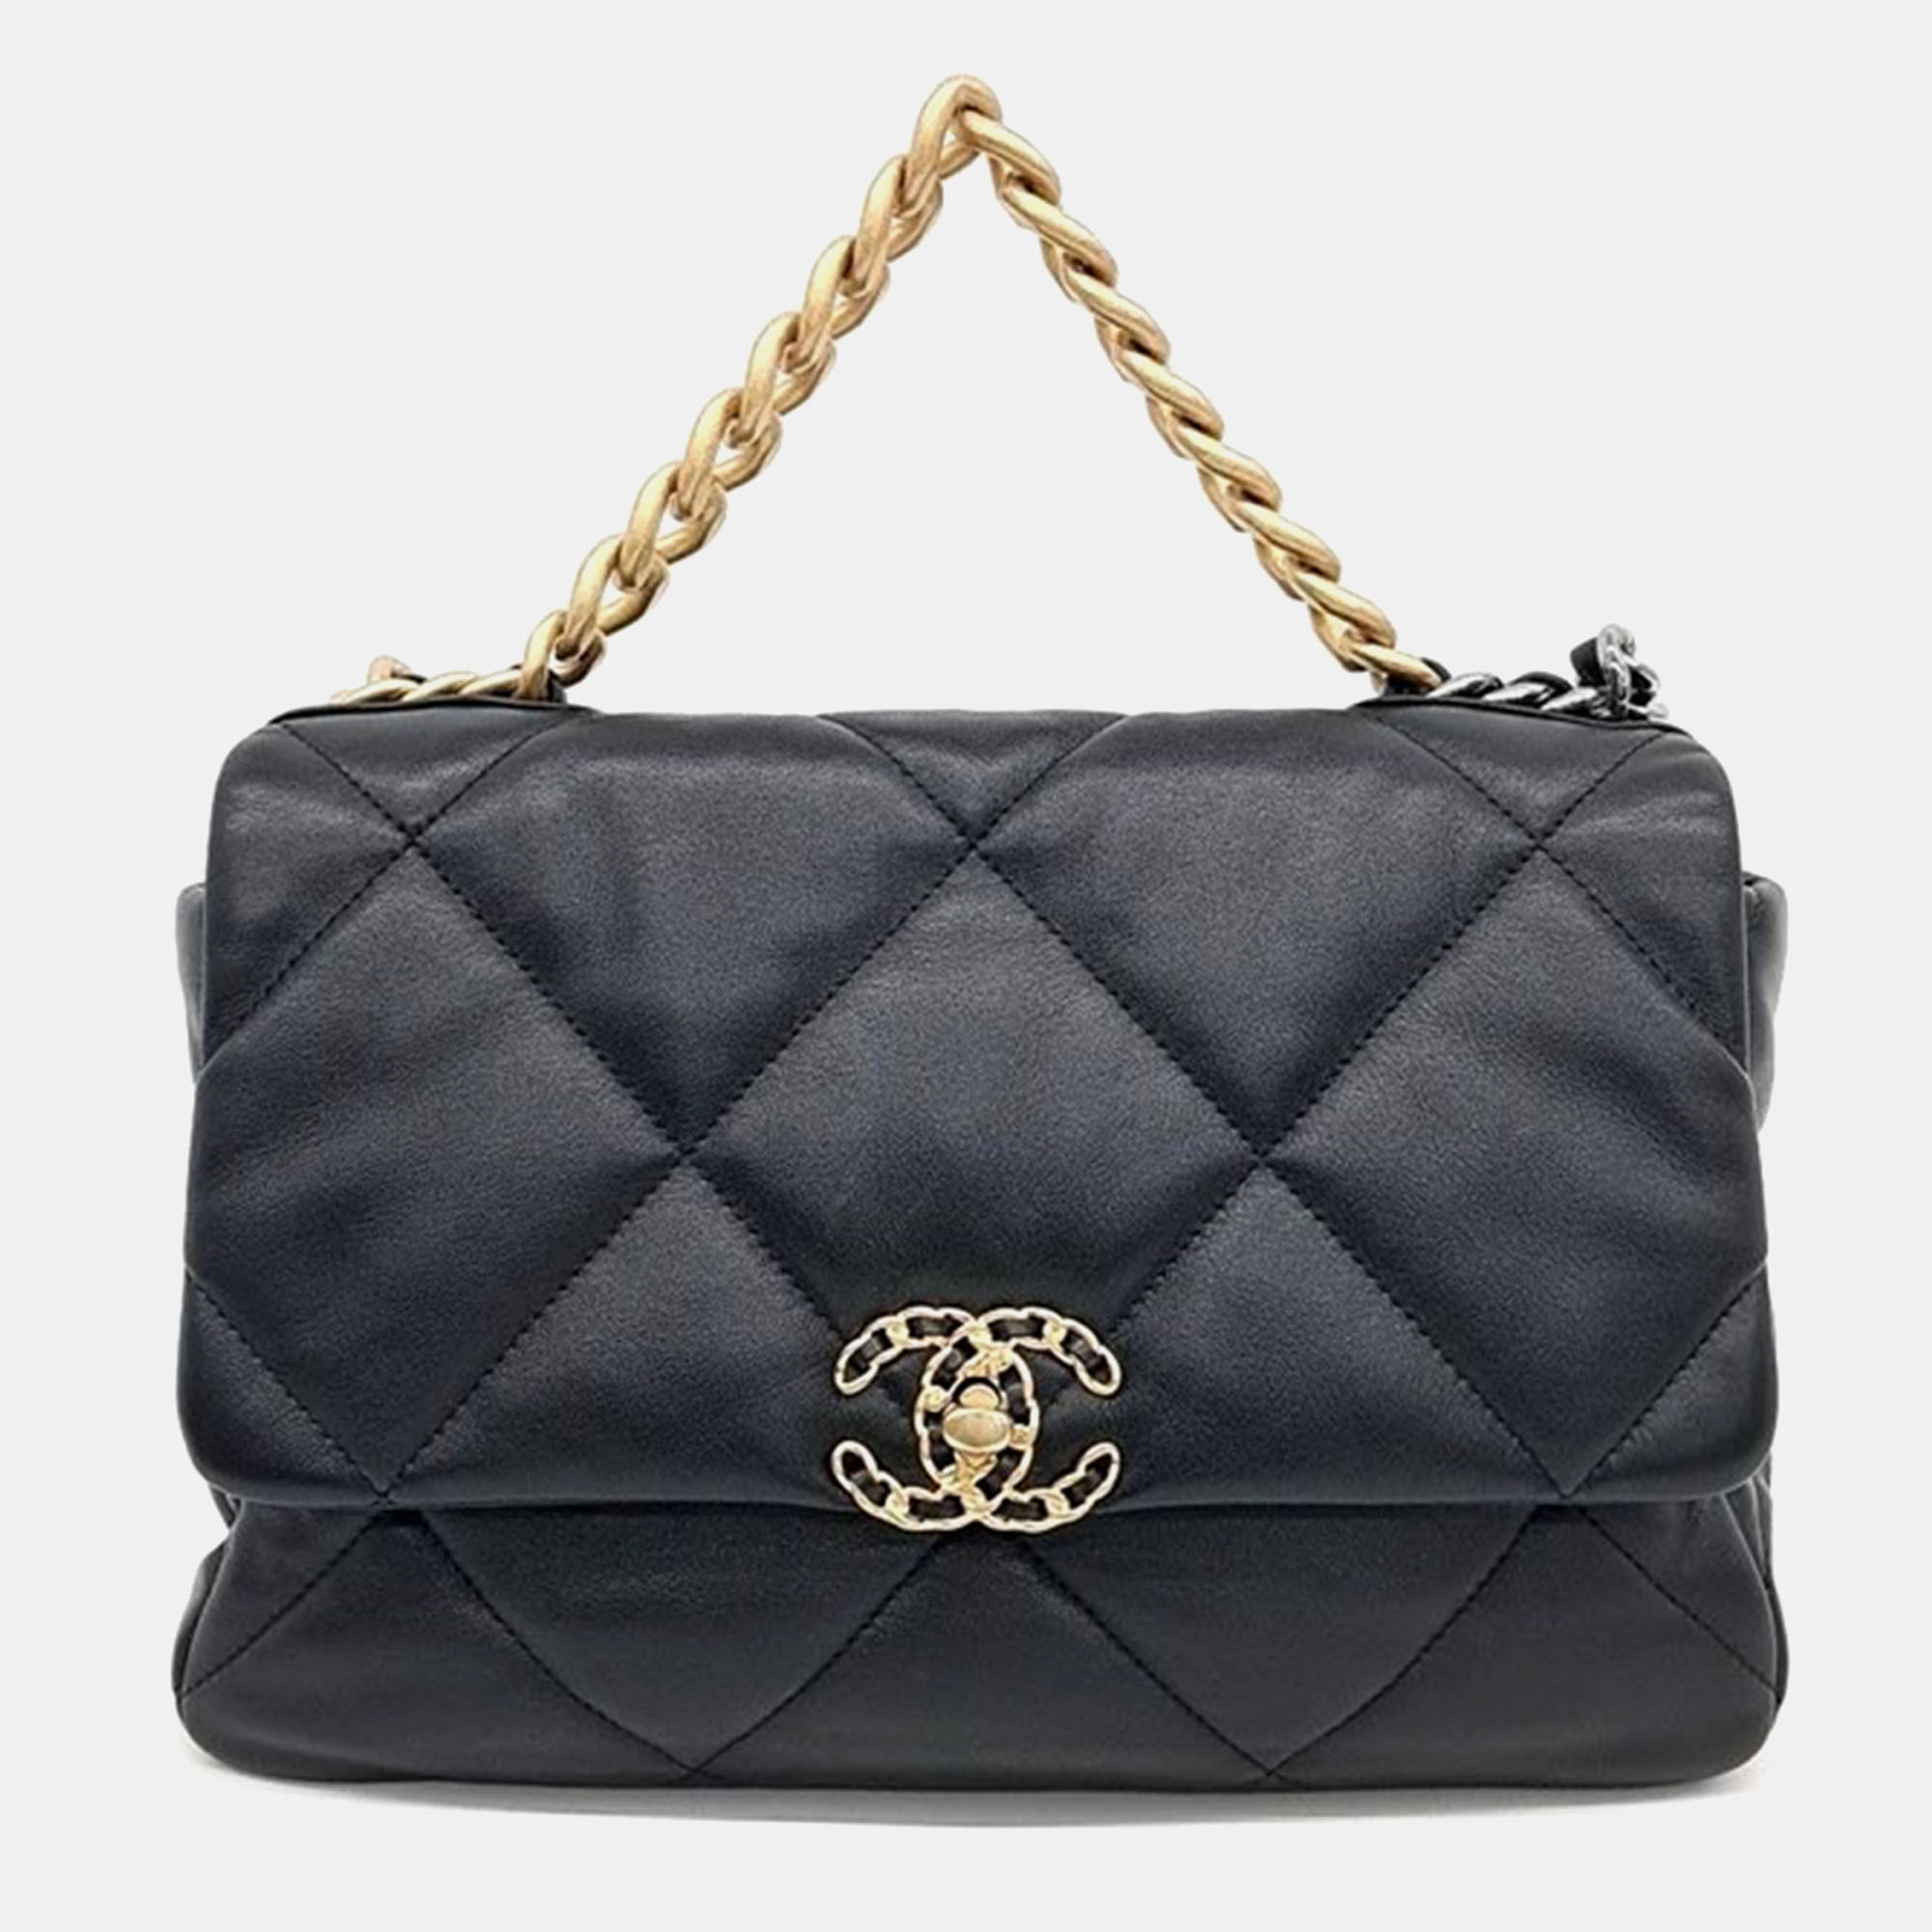 

Chanel 19 Large Flap Bag, Black